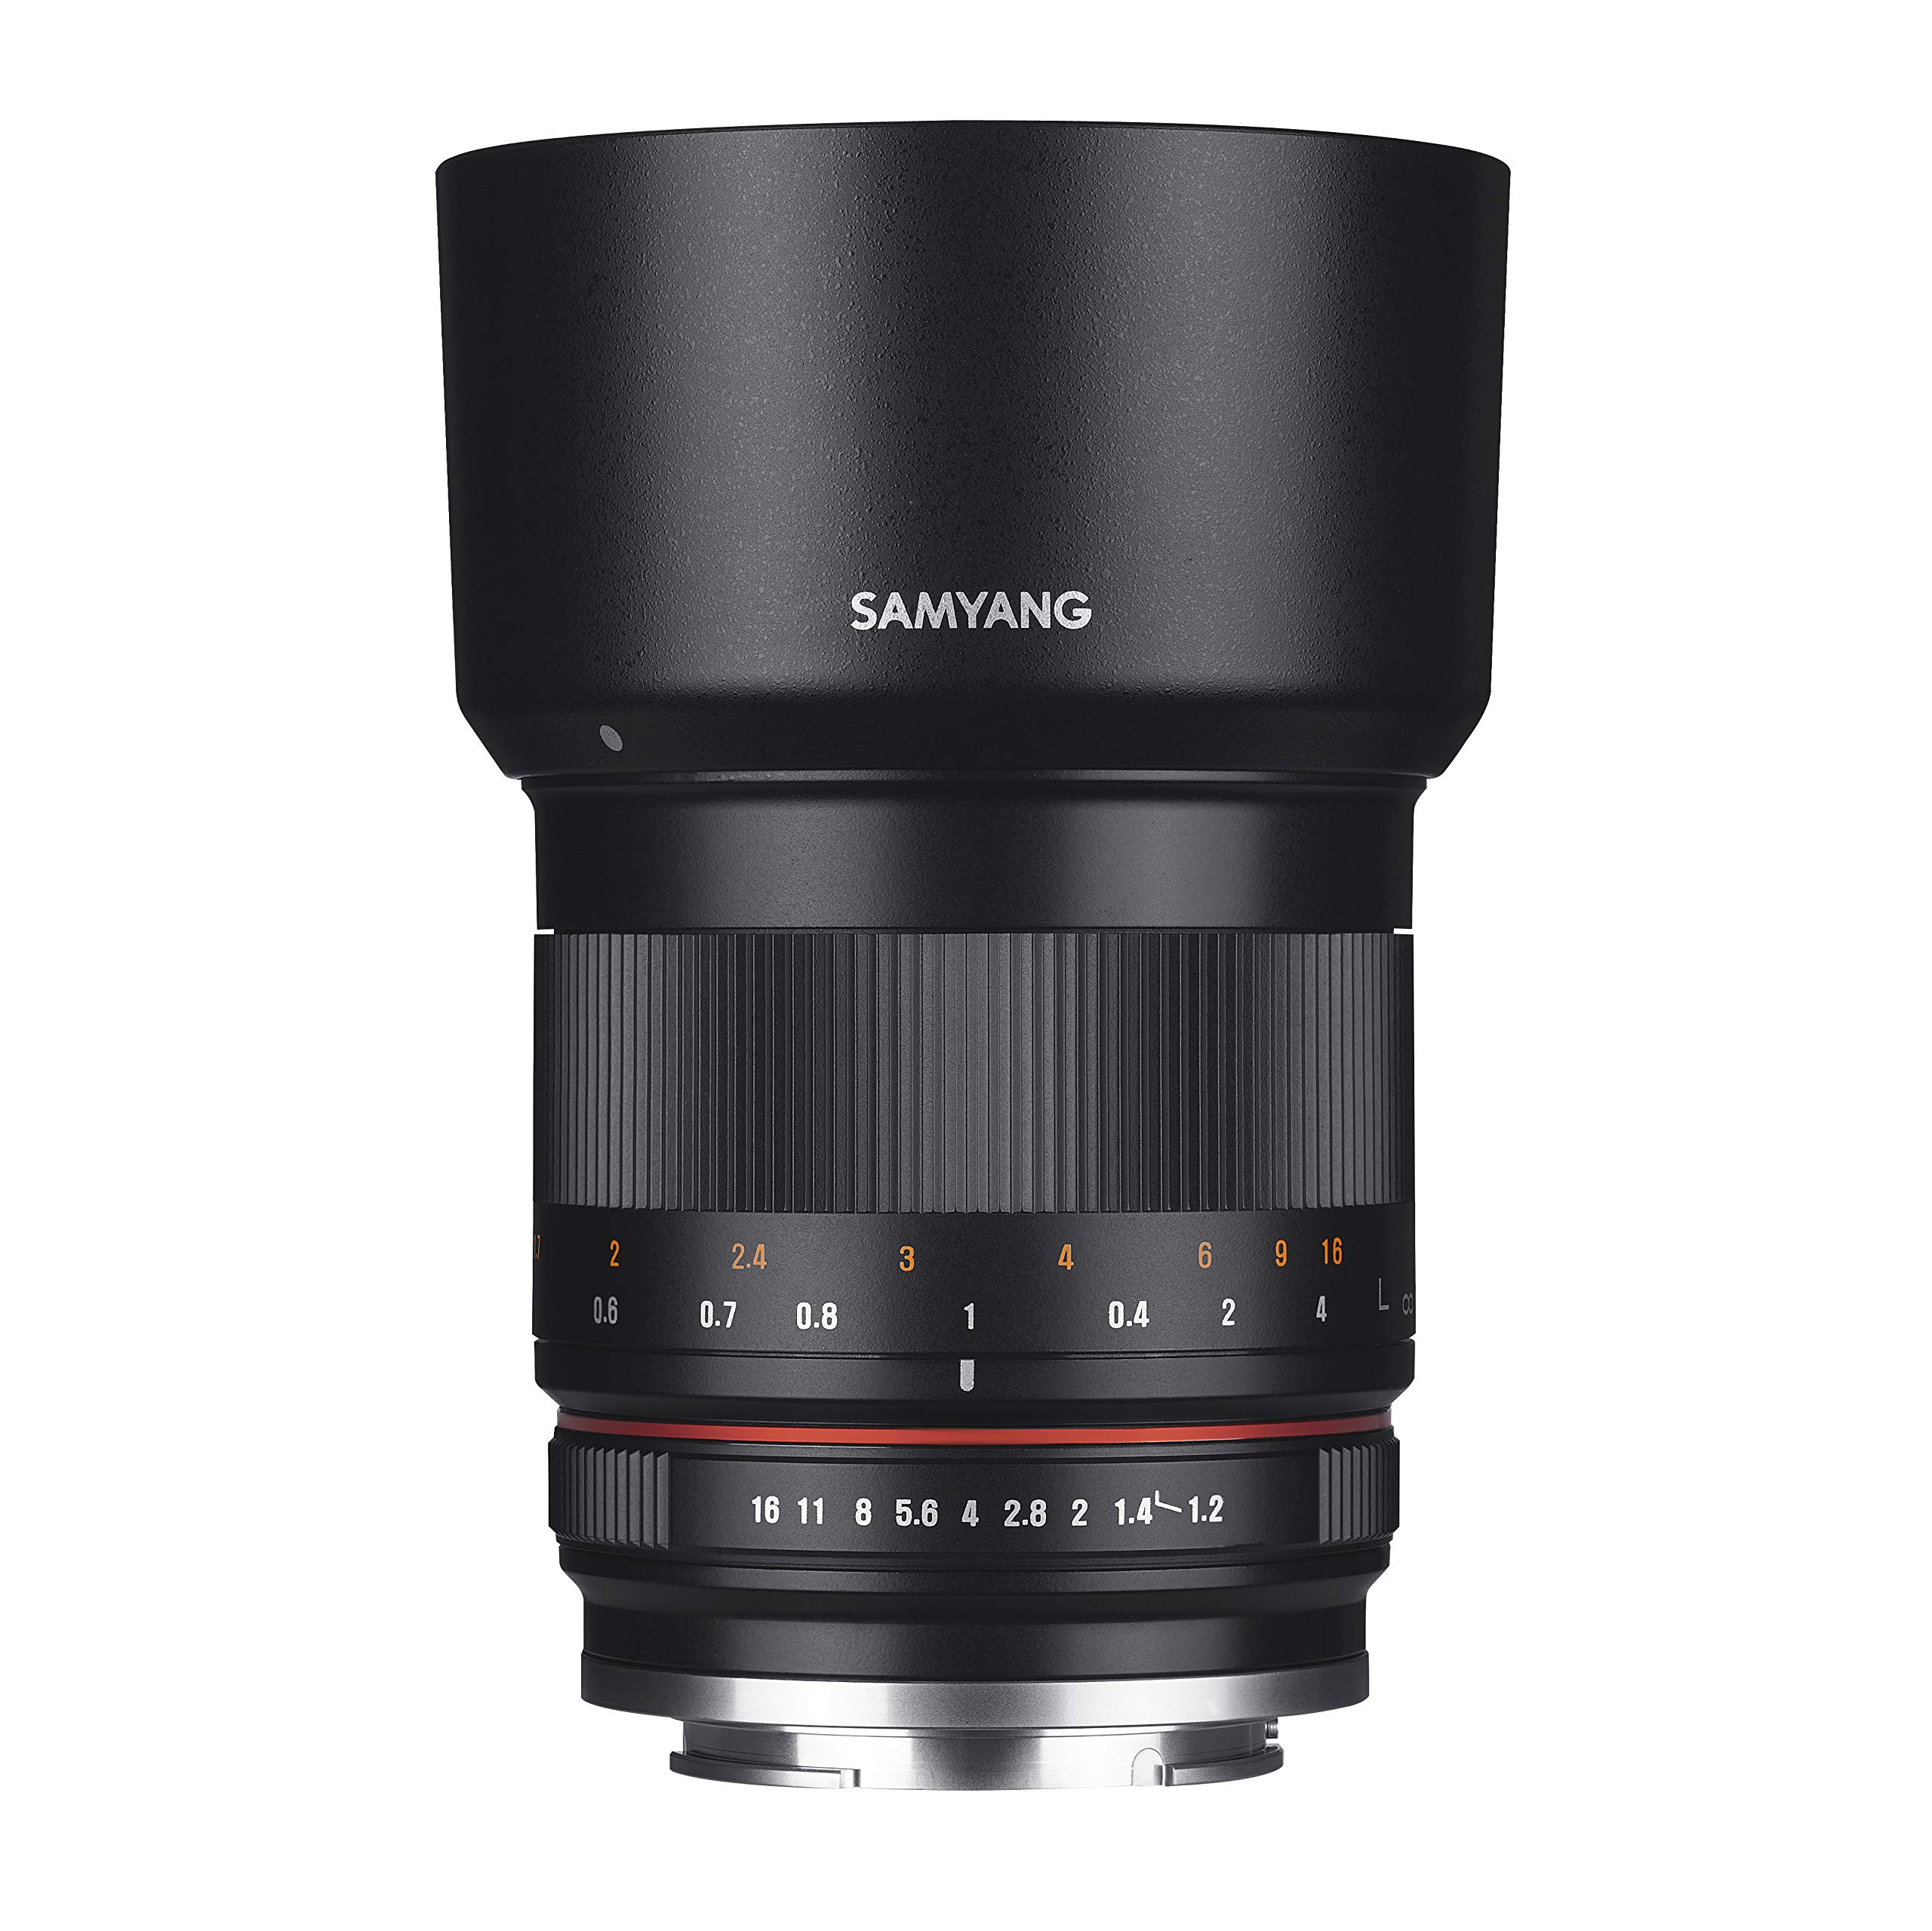 SAMYANG 7721 MF 50mm F1.2 APS-C Fuji X schwarz - manuelles Foto Objektiv mit 50mm Festbrennweite für APS-C Kameras mit Fuji X-Mount, ideal für Portrait, sanftes Bokeh, kompakt und leicht